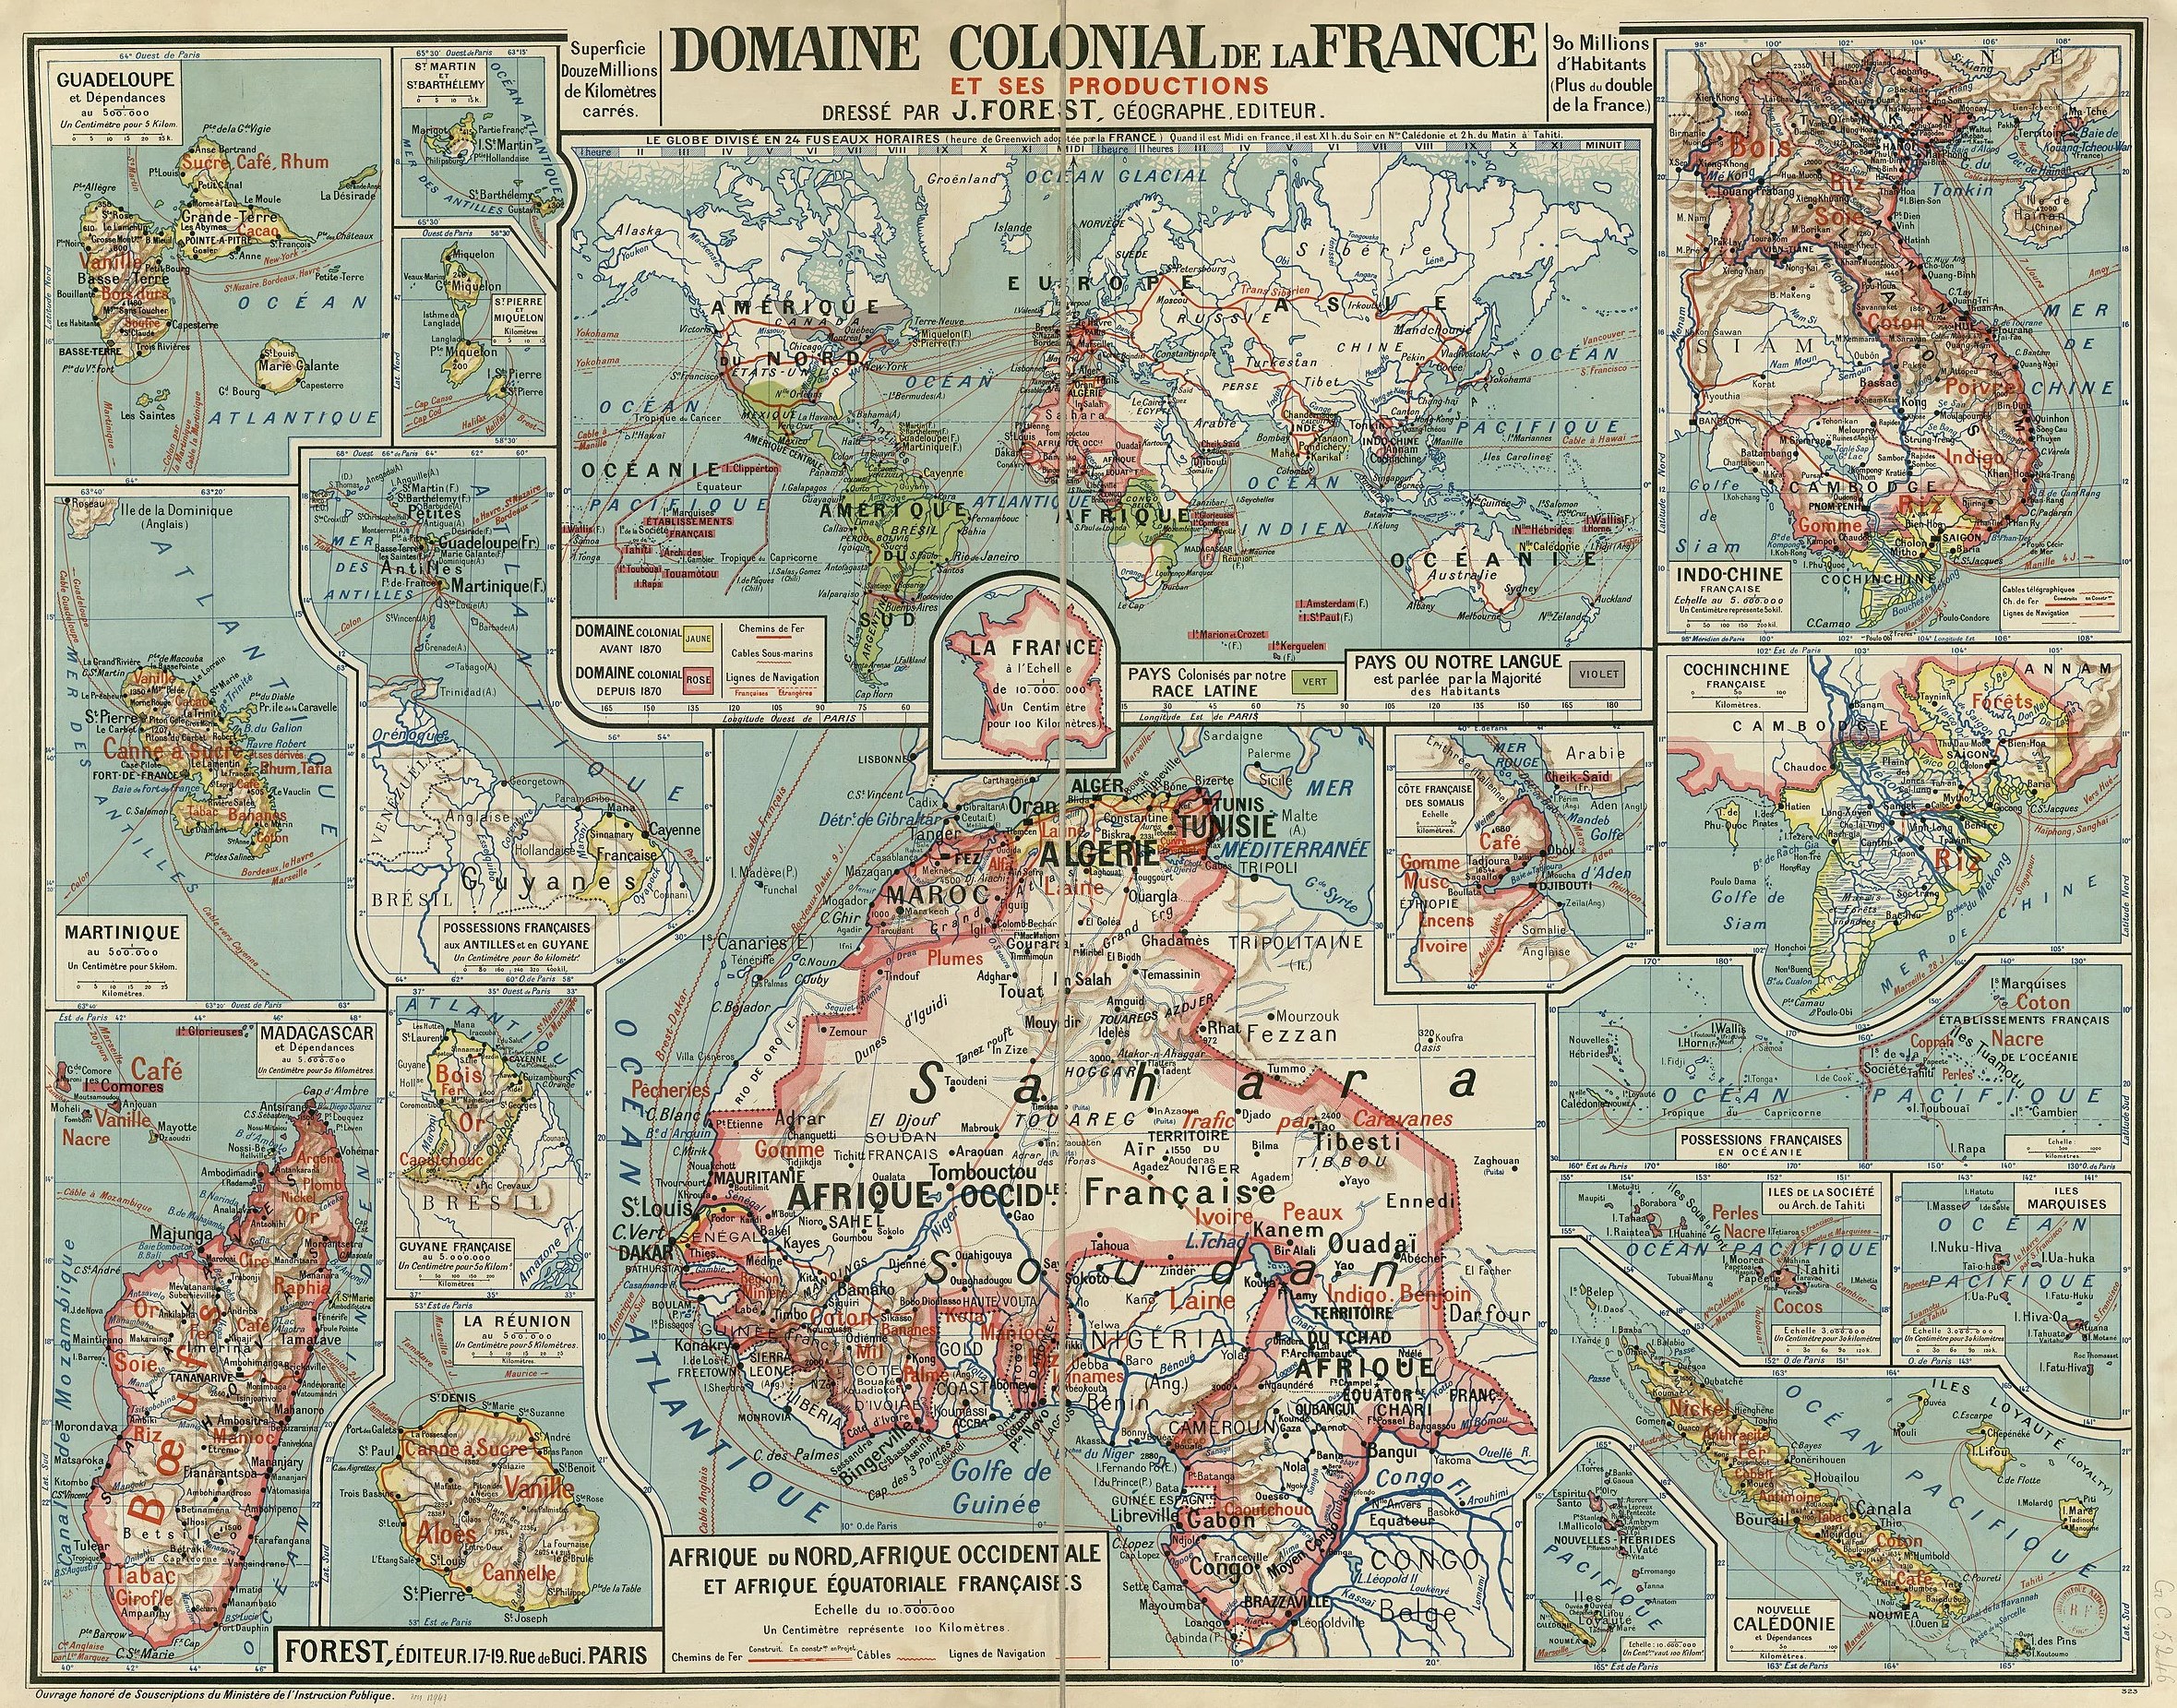 Los dominios coloniales de Francia y sus producciones (1930)